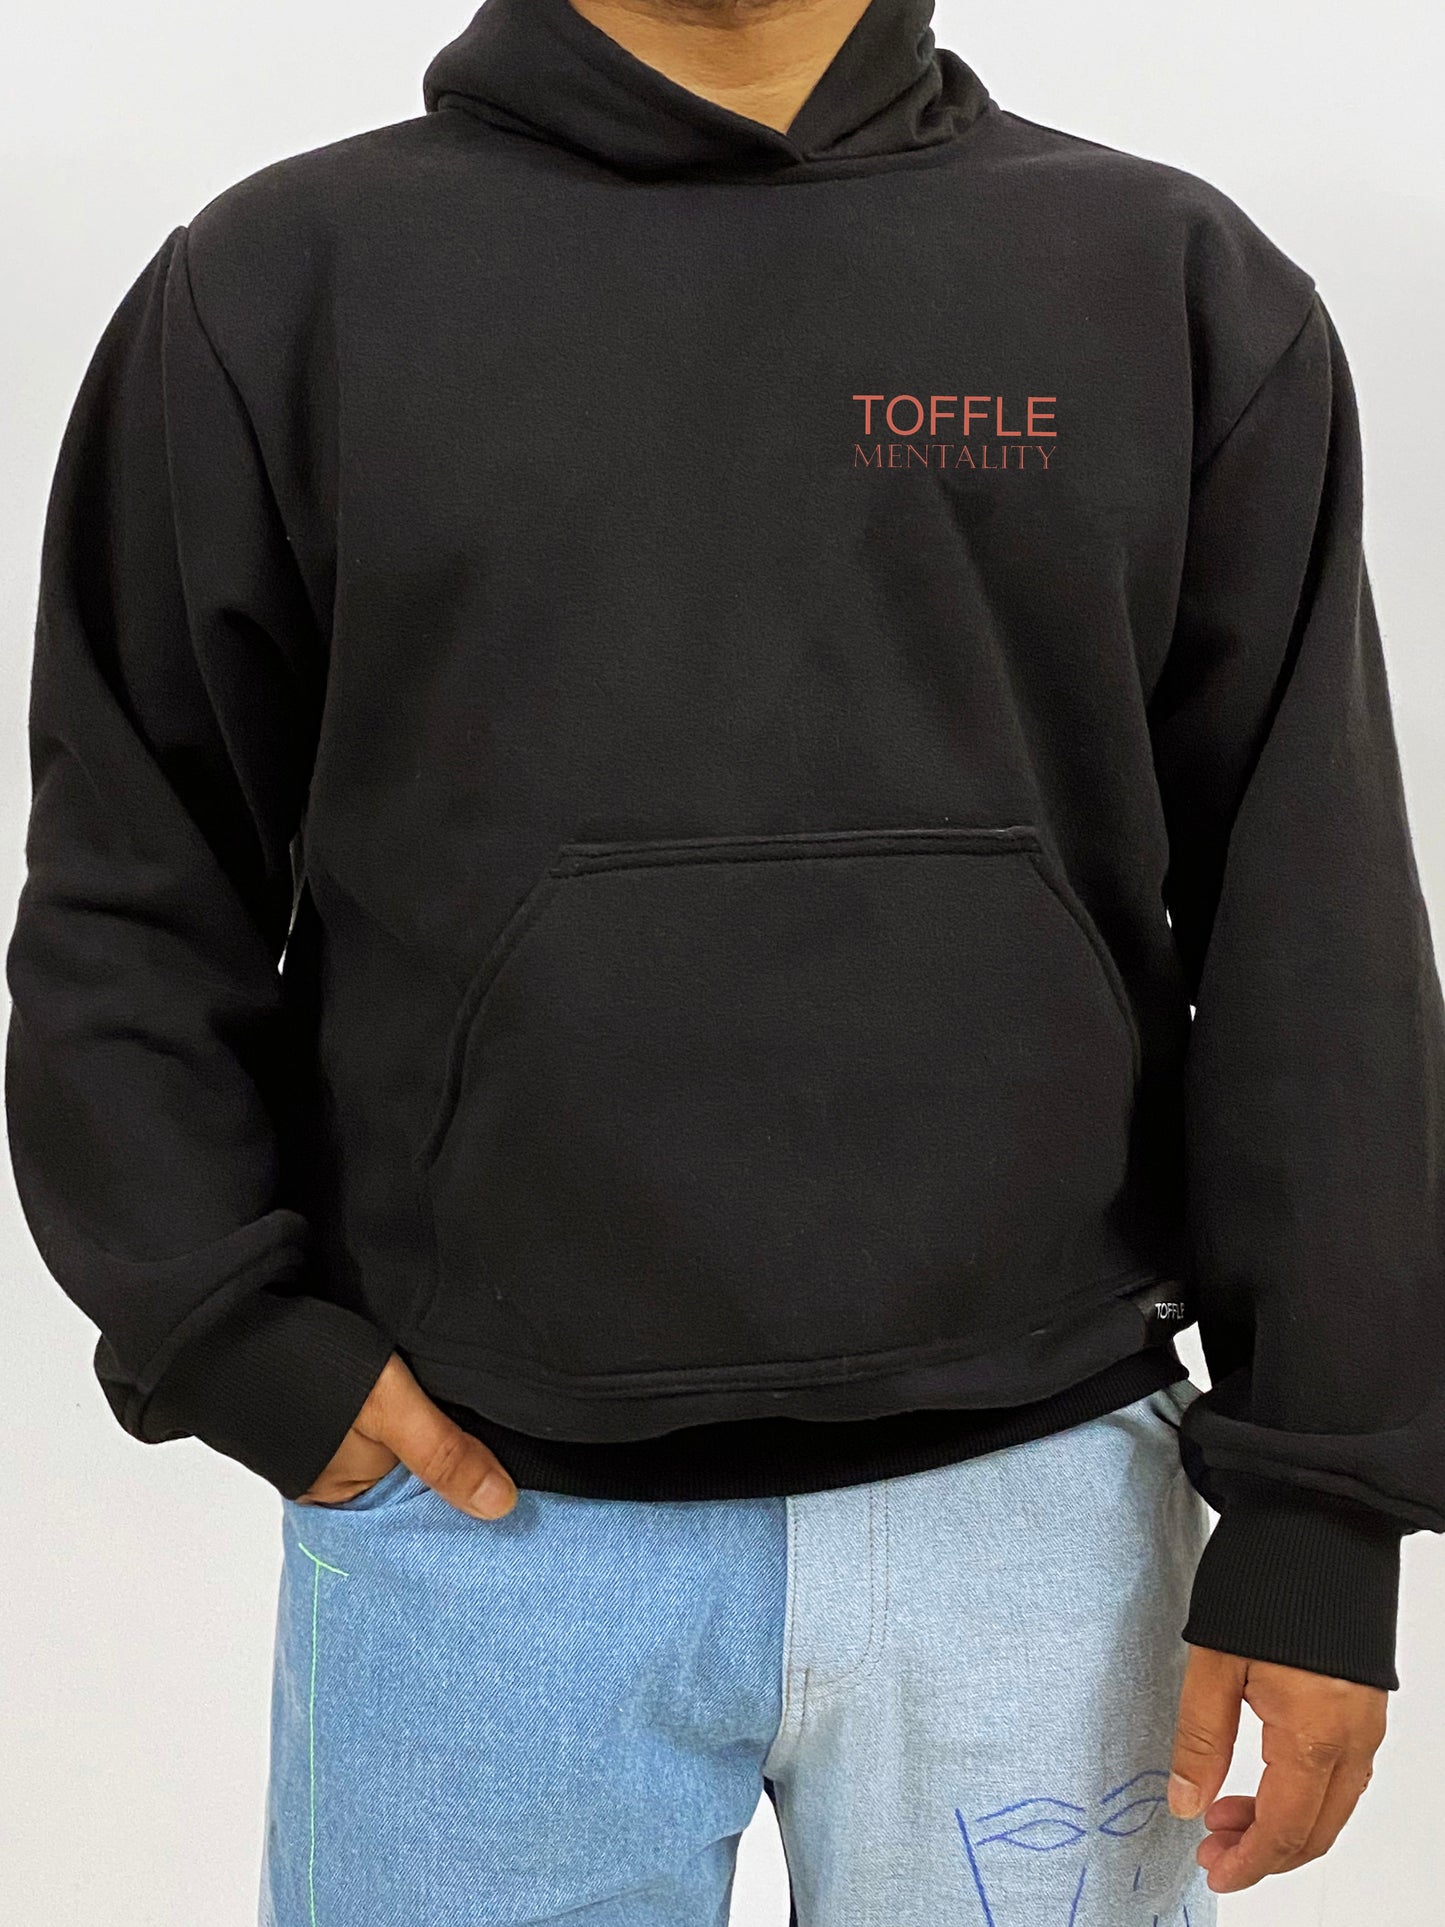 Toffle Mentality Hoodie/Sweatshirt